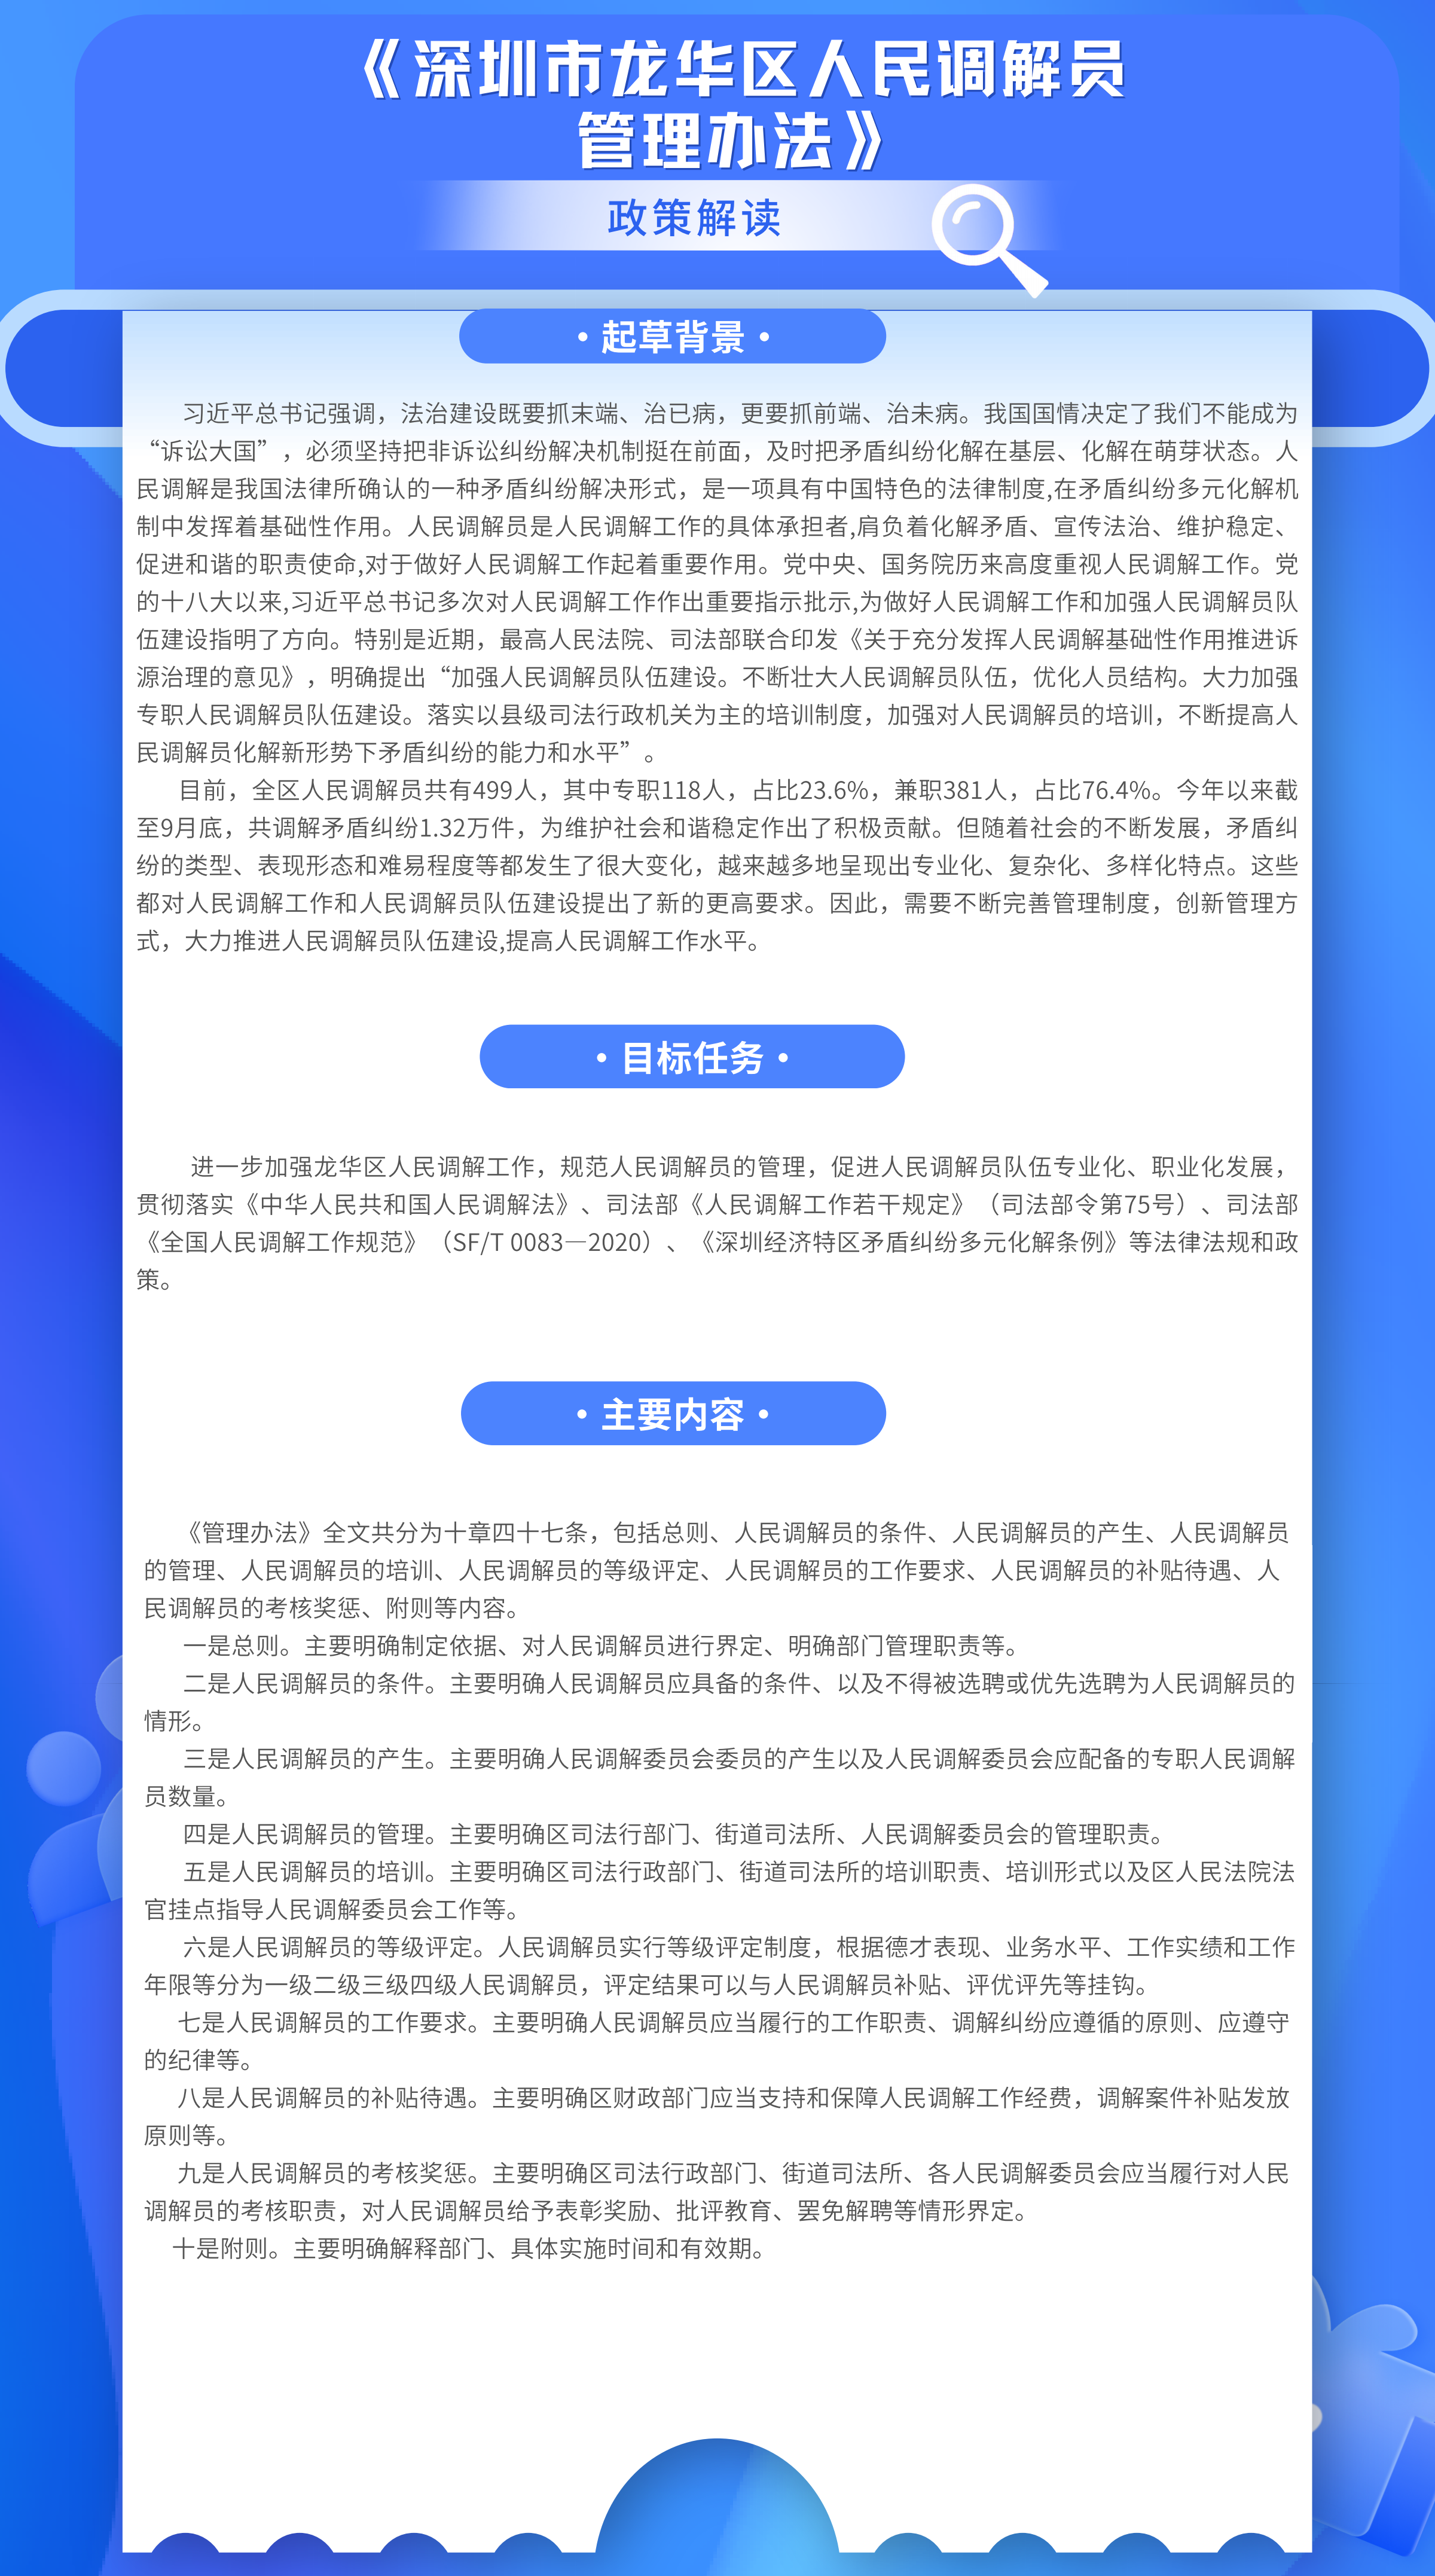 附件3 图片解读：《深圳市龙华区人民调解员管理办法》政策解读.png